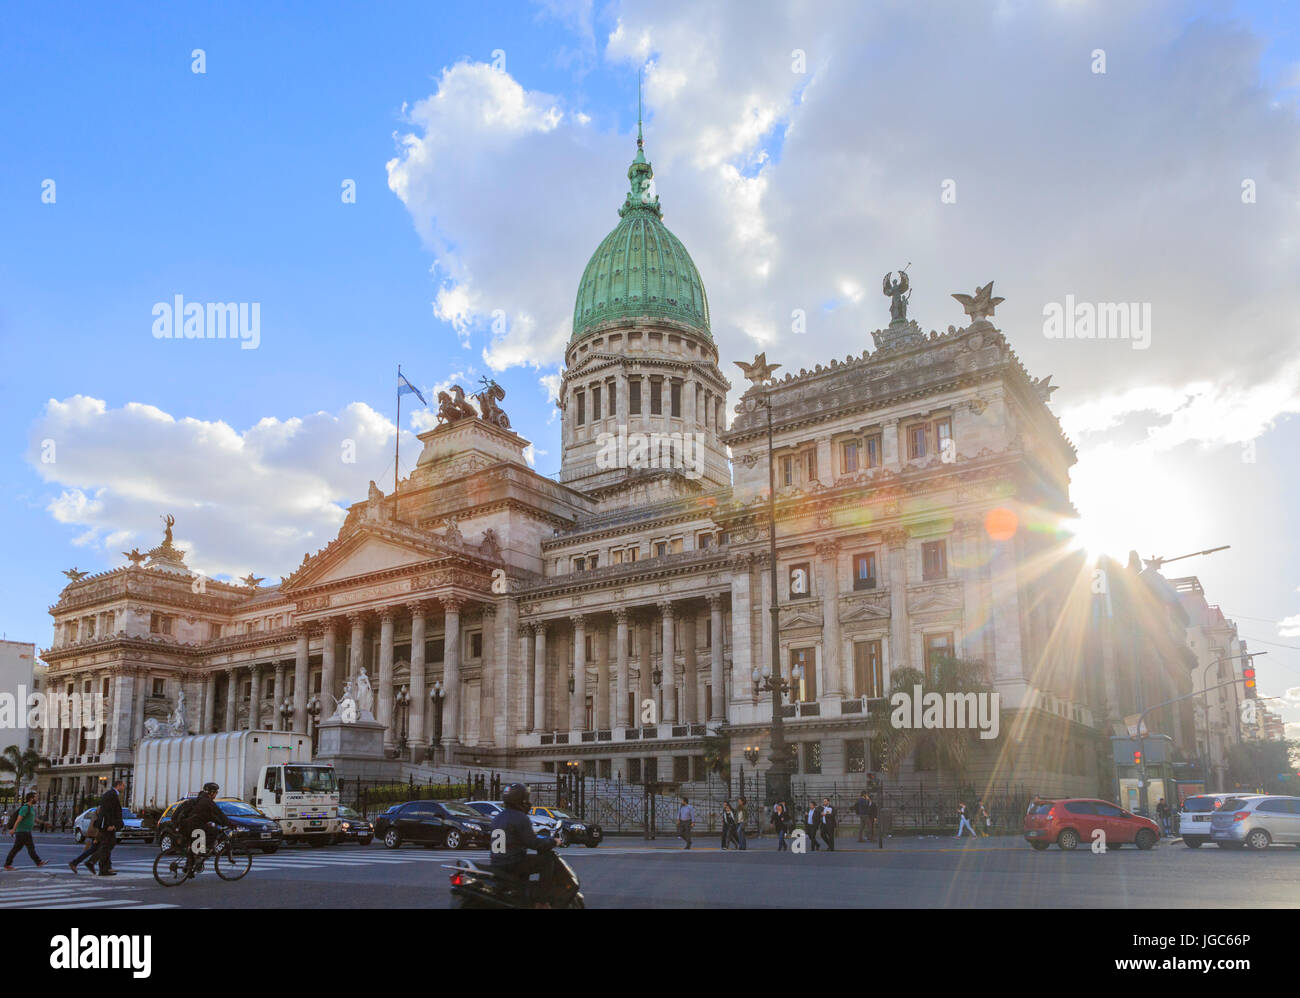 Palast von der argentinischen Nationalkongress, Buenos Aires, Argentinien, Südamerika Stockfoto